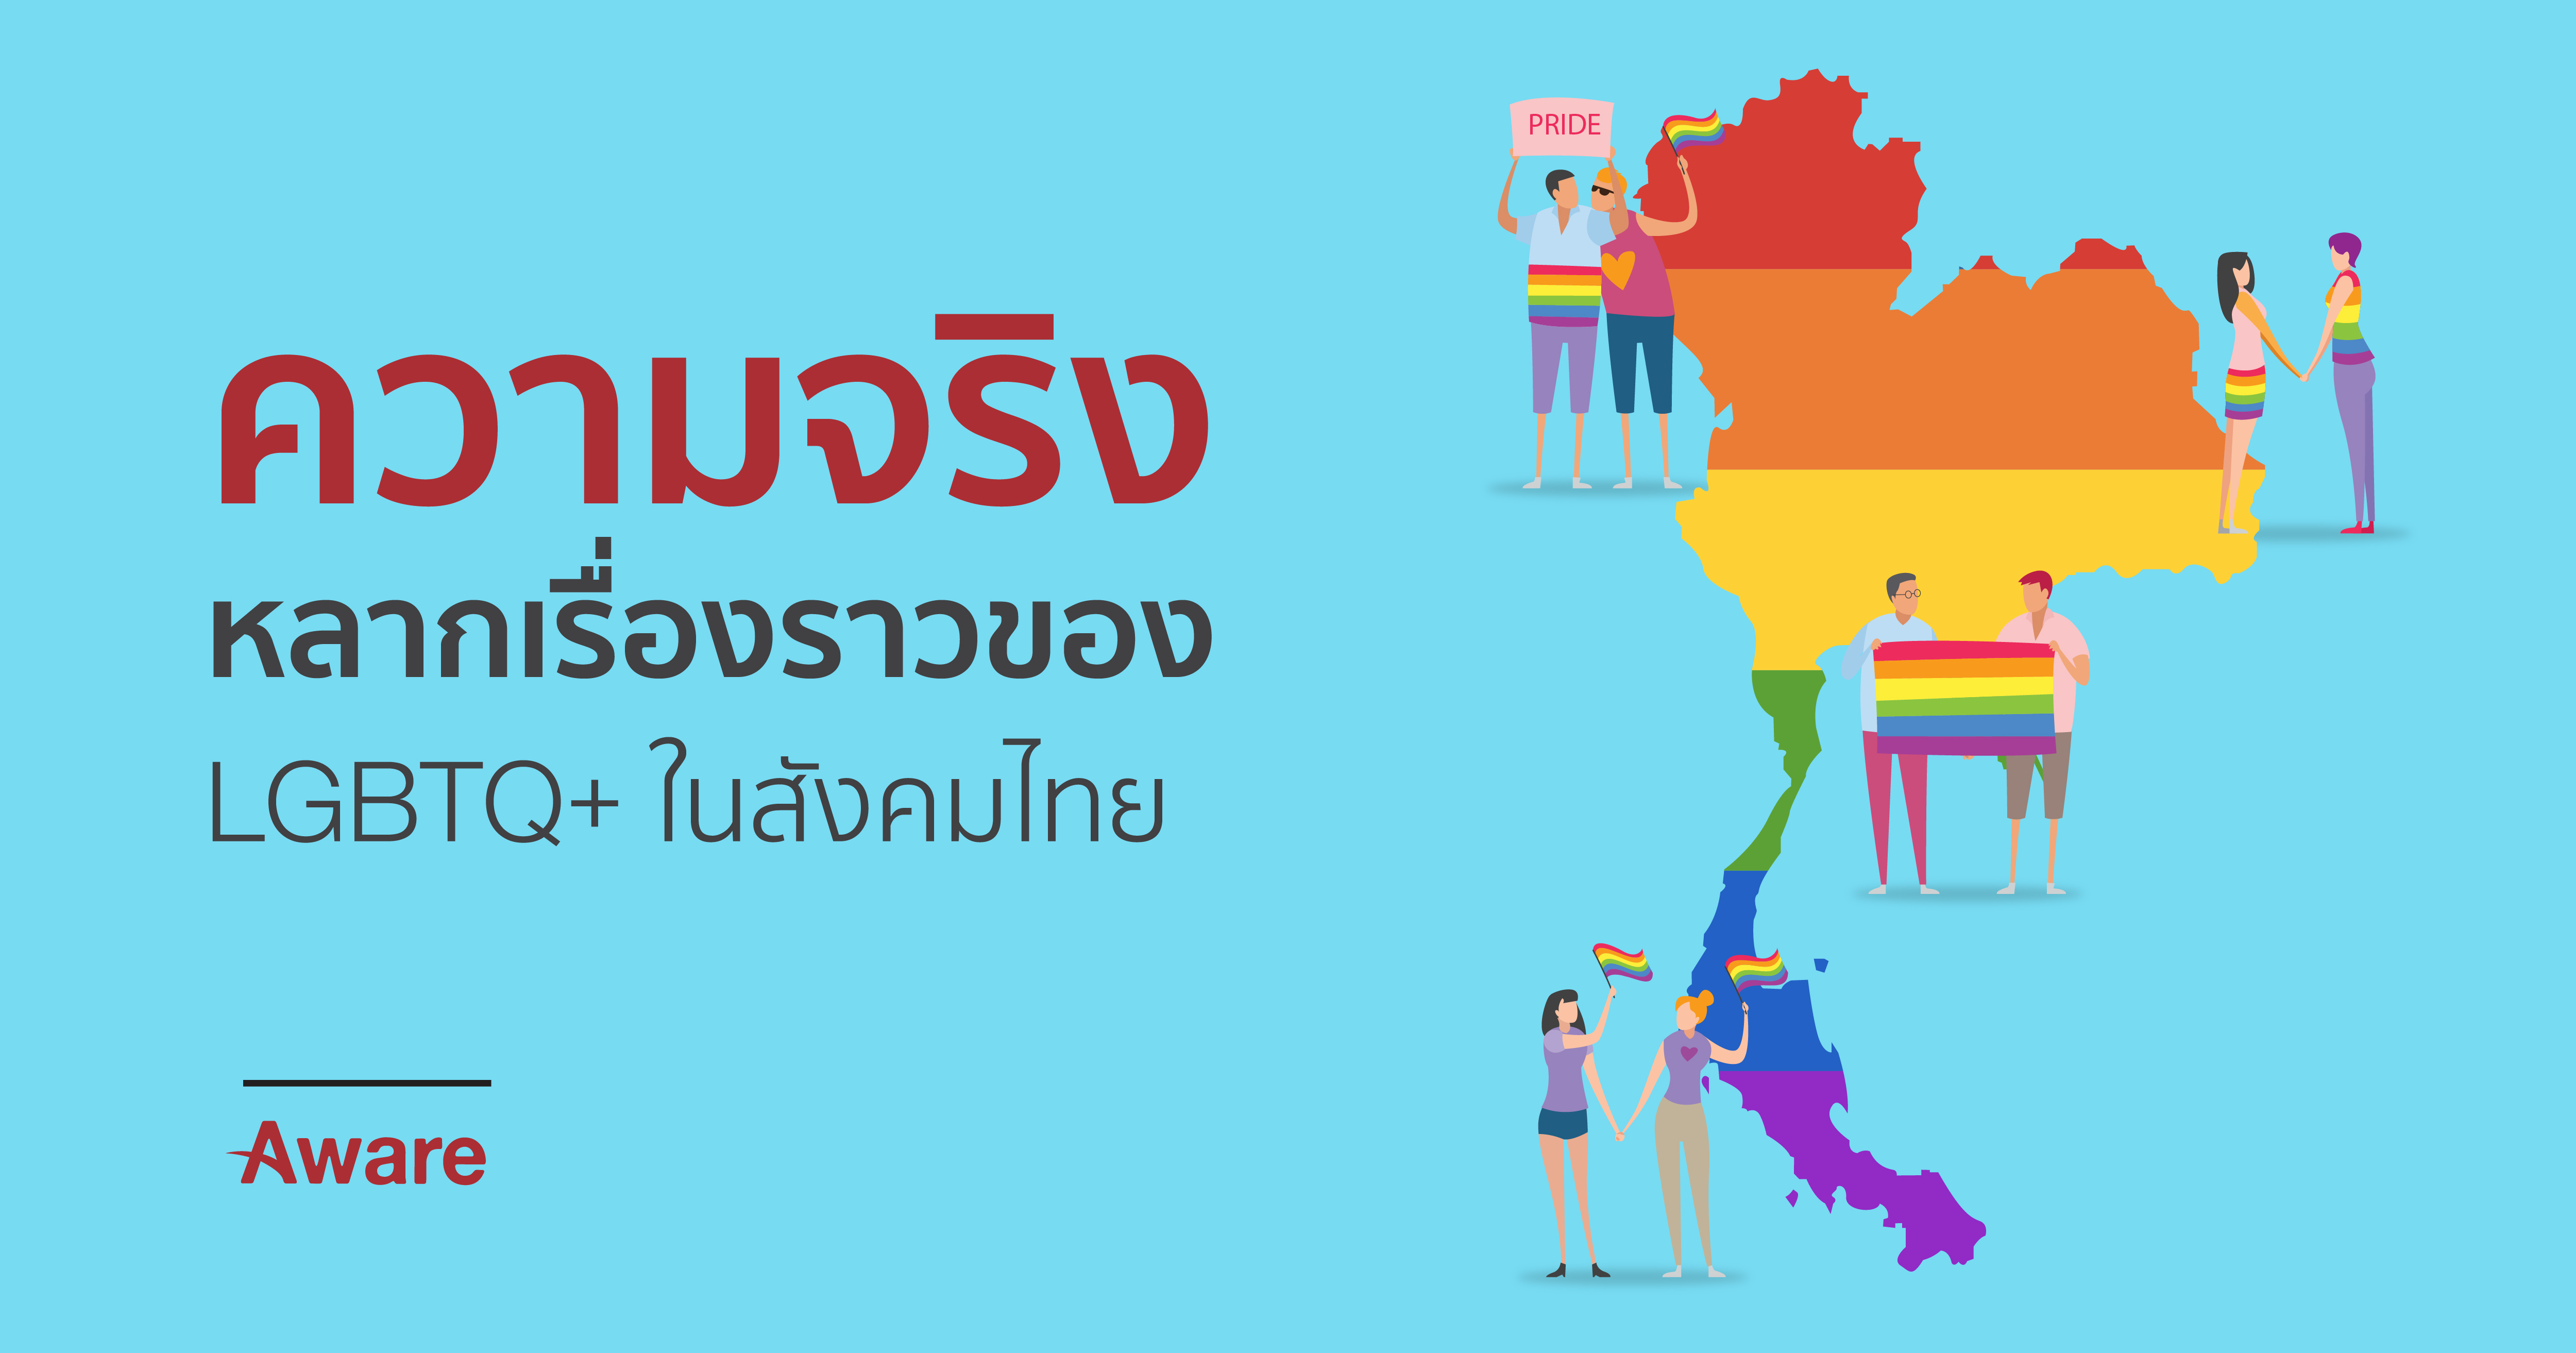 ความจริงหลากเรื่องราวของ LGBTQ+ ในสังคมไทย